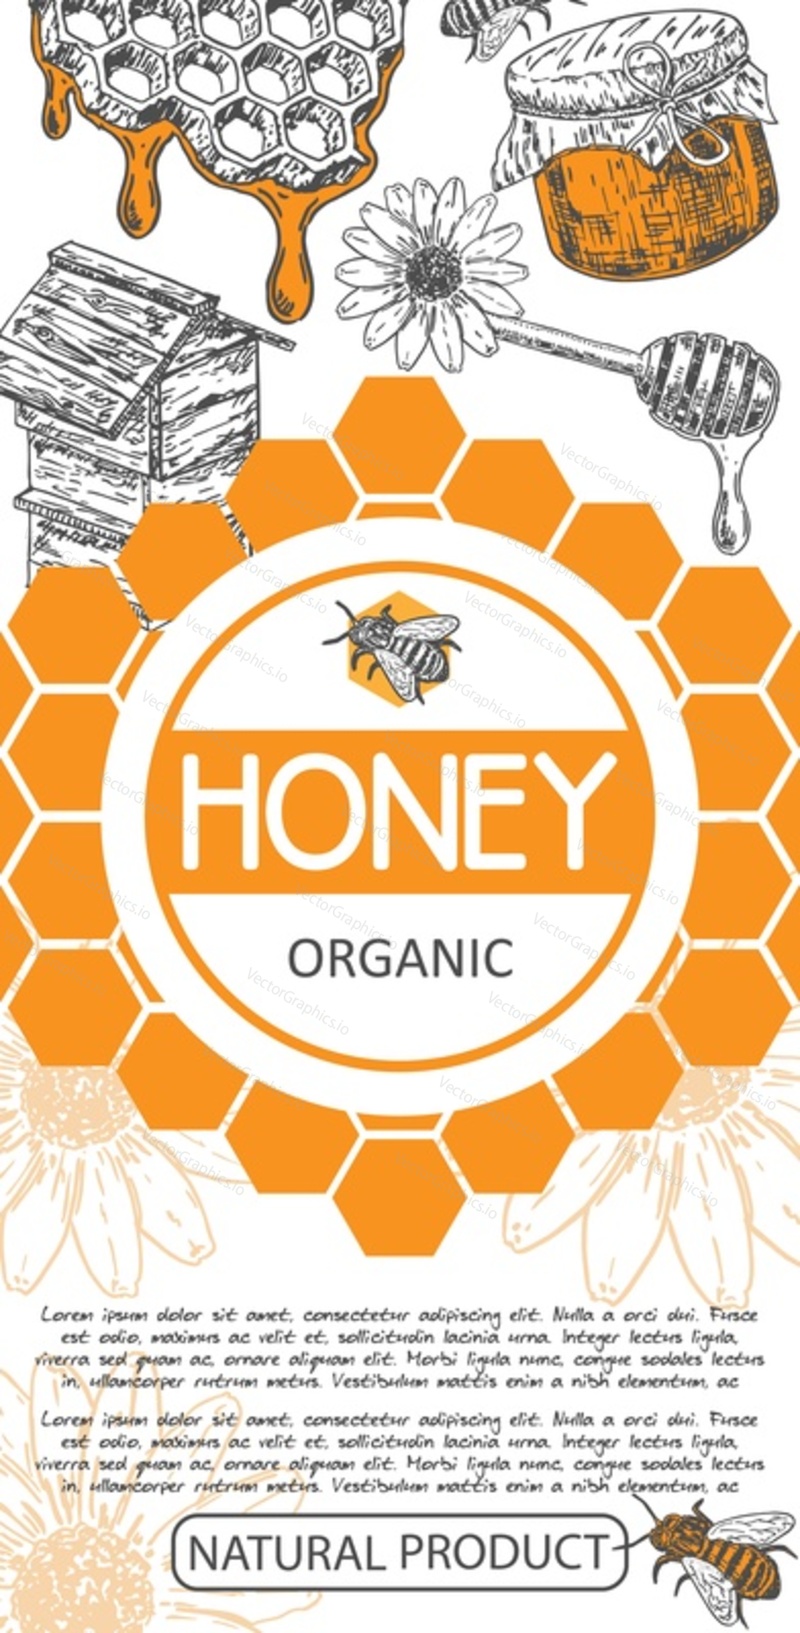 Вектор органического меда. Иллюстрация дизайна этикетки банки с пчелиным кормом. Винтажный графический логотип продукта Beehive. Натуральный цветочный сироп от медоносной пчелы. Брендинг и реклама пчеловодства